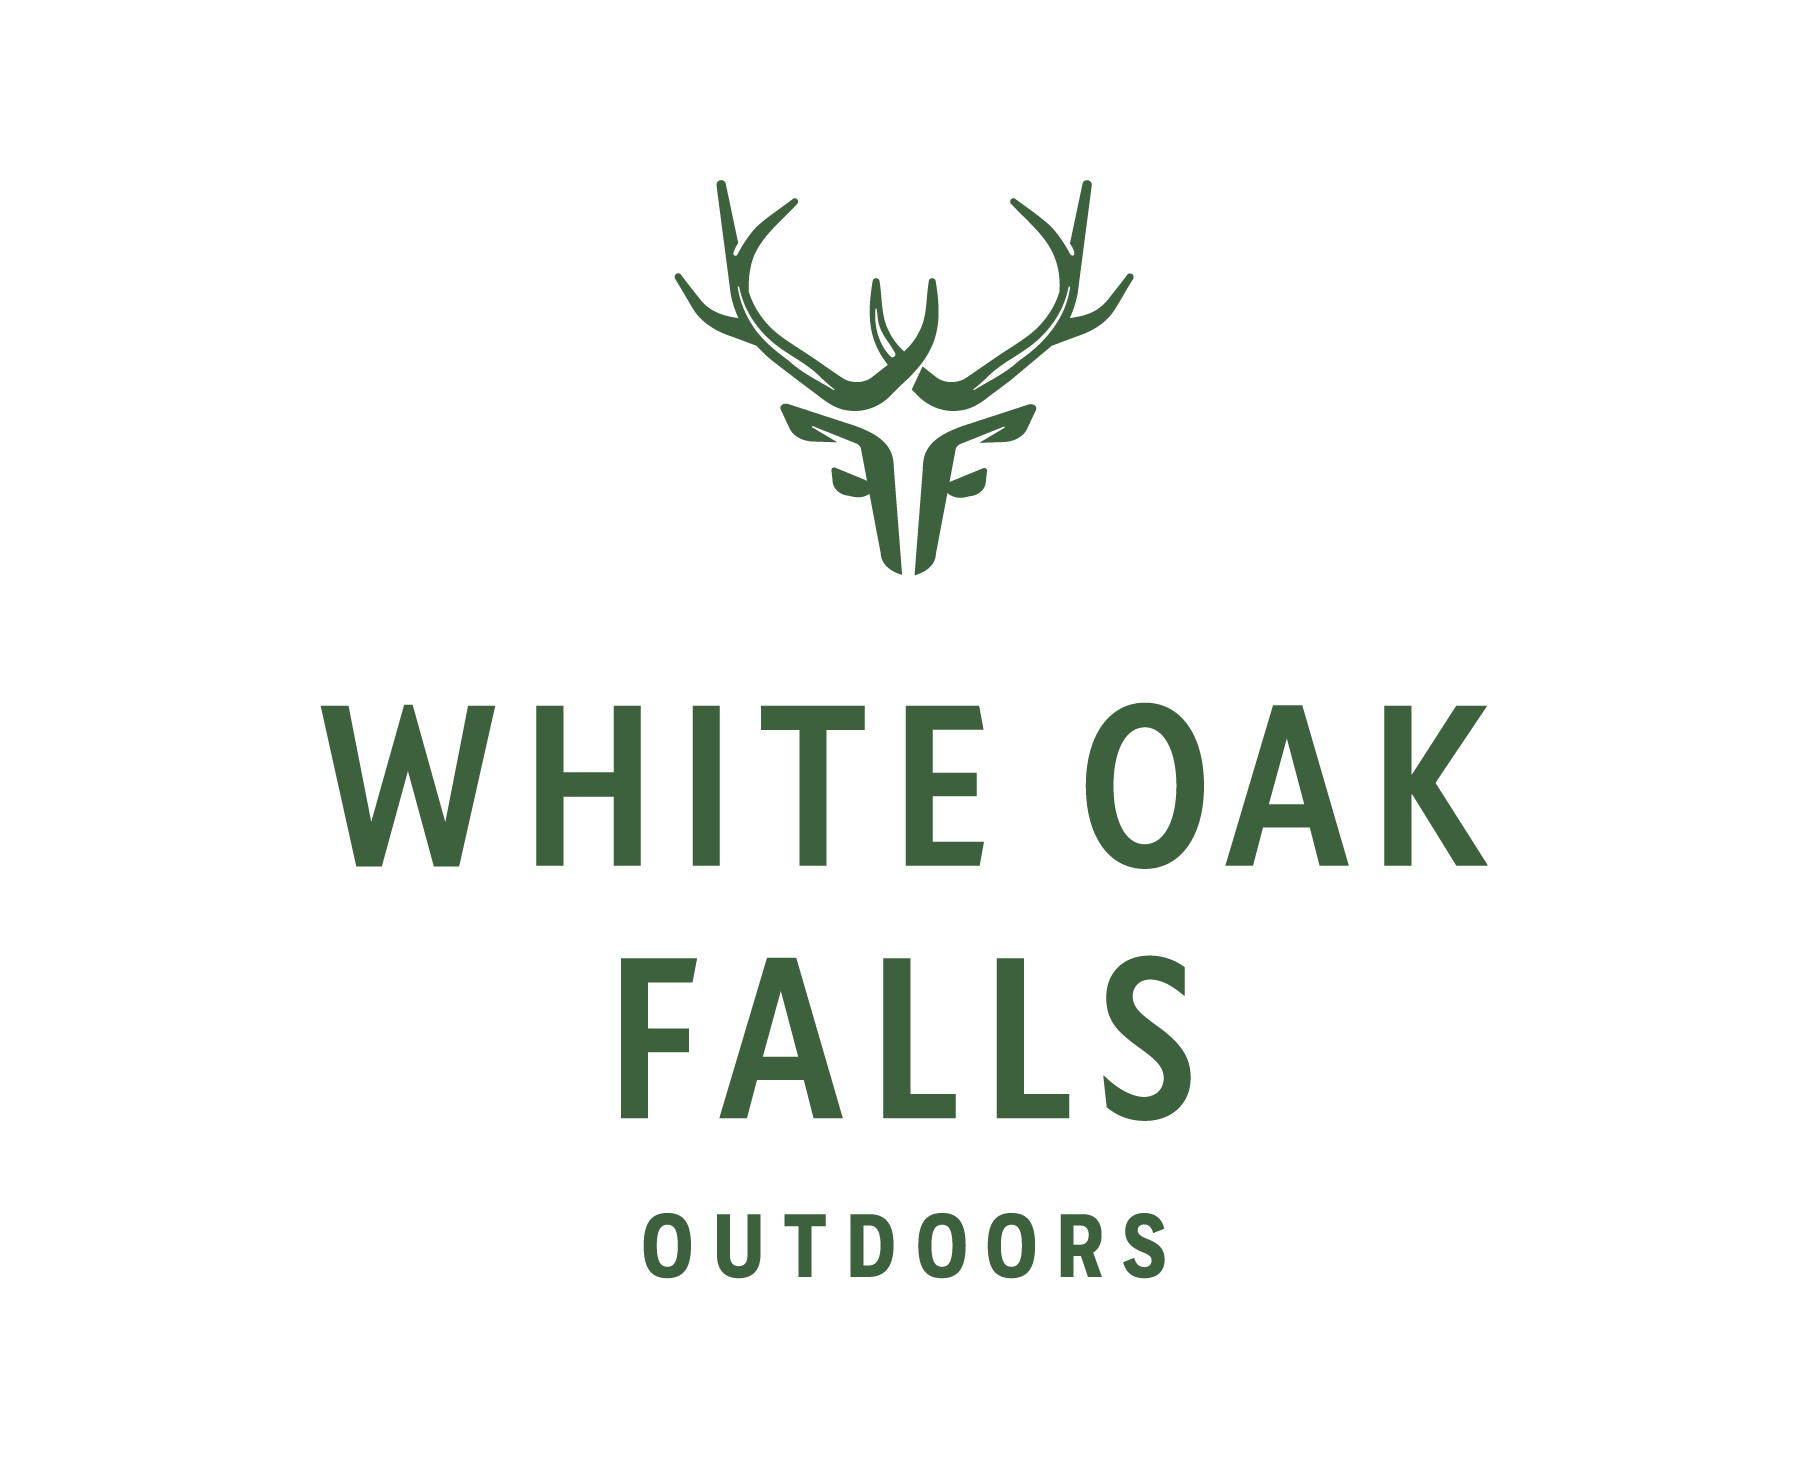 White Oak Falls